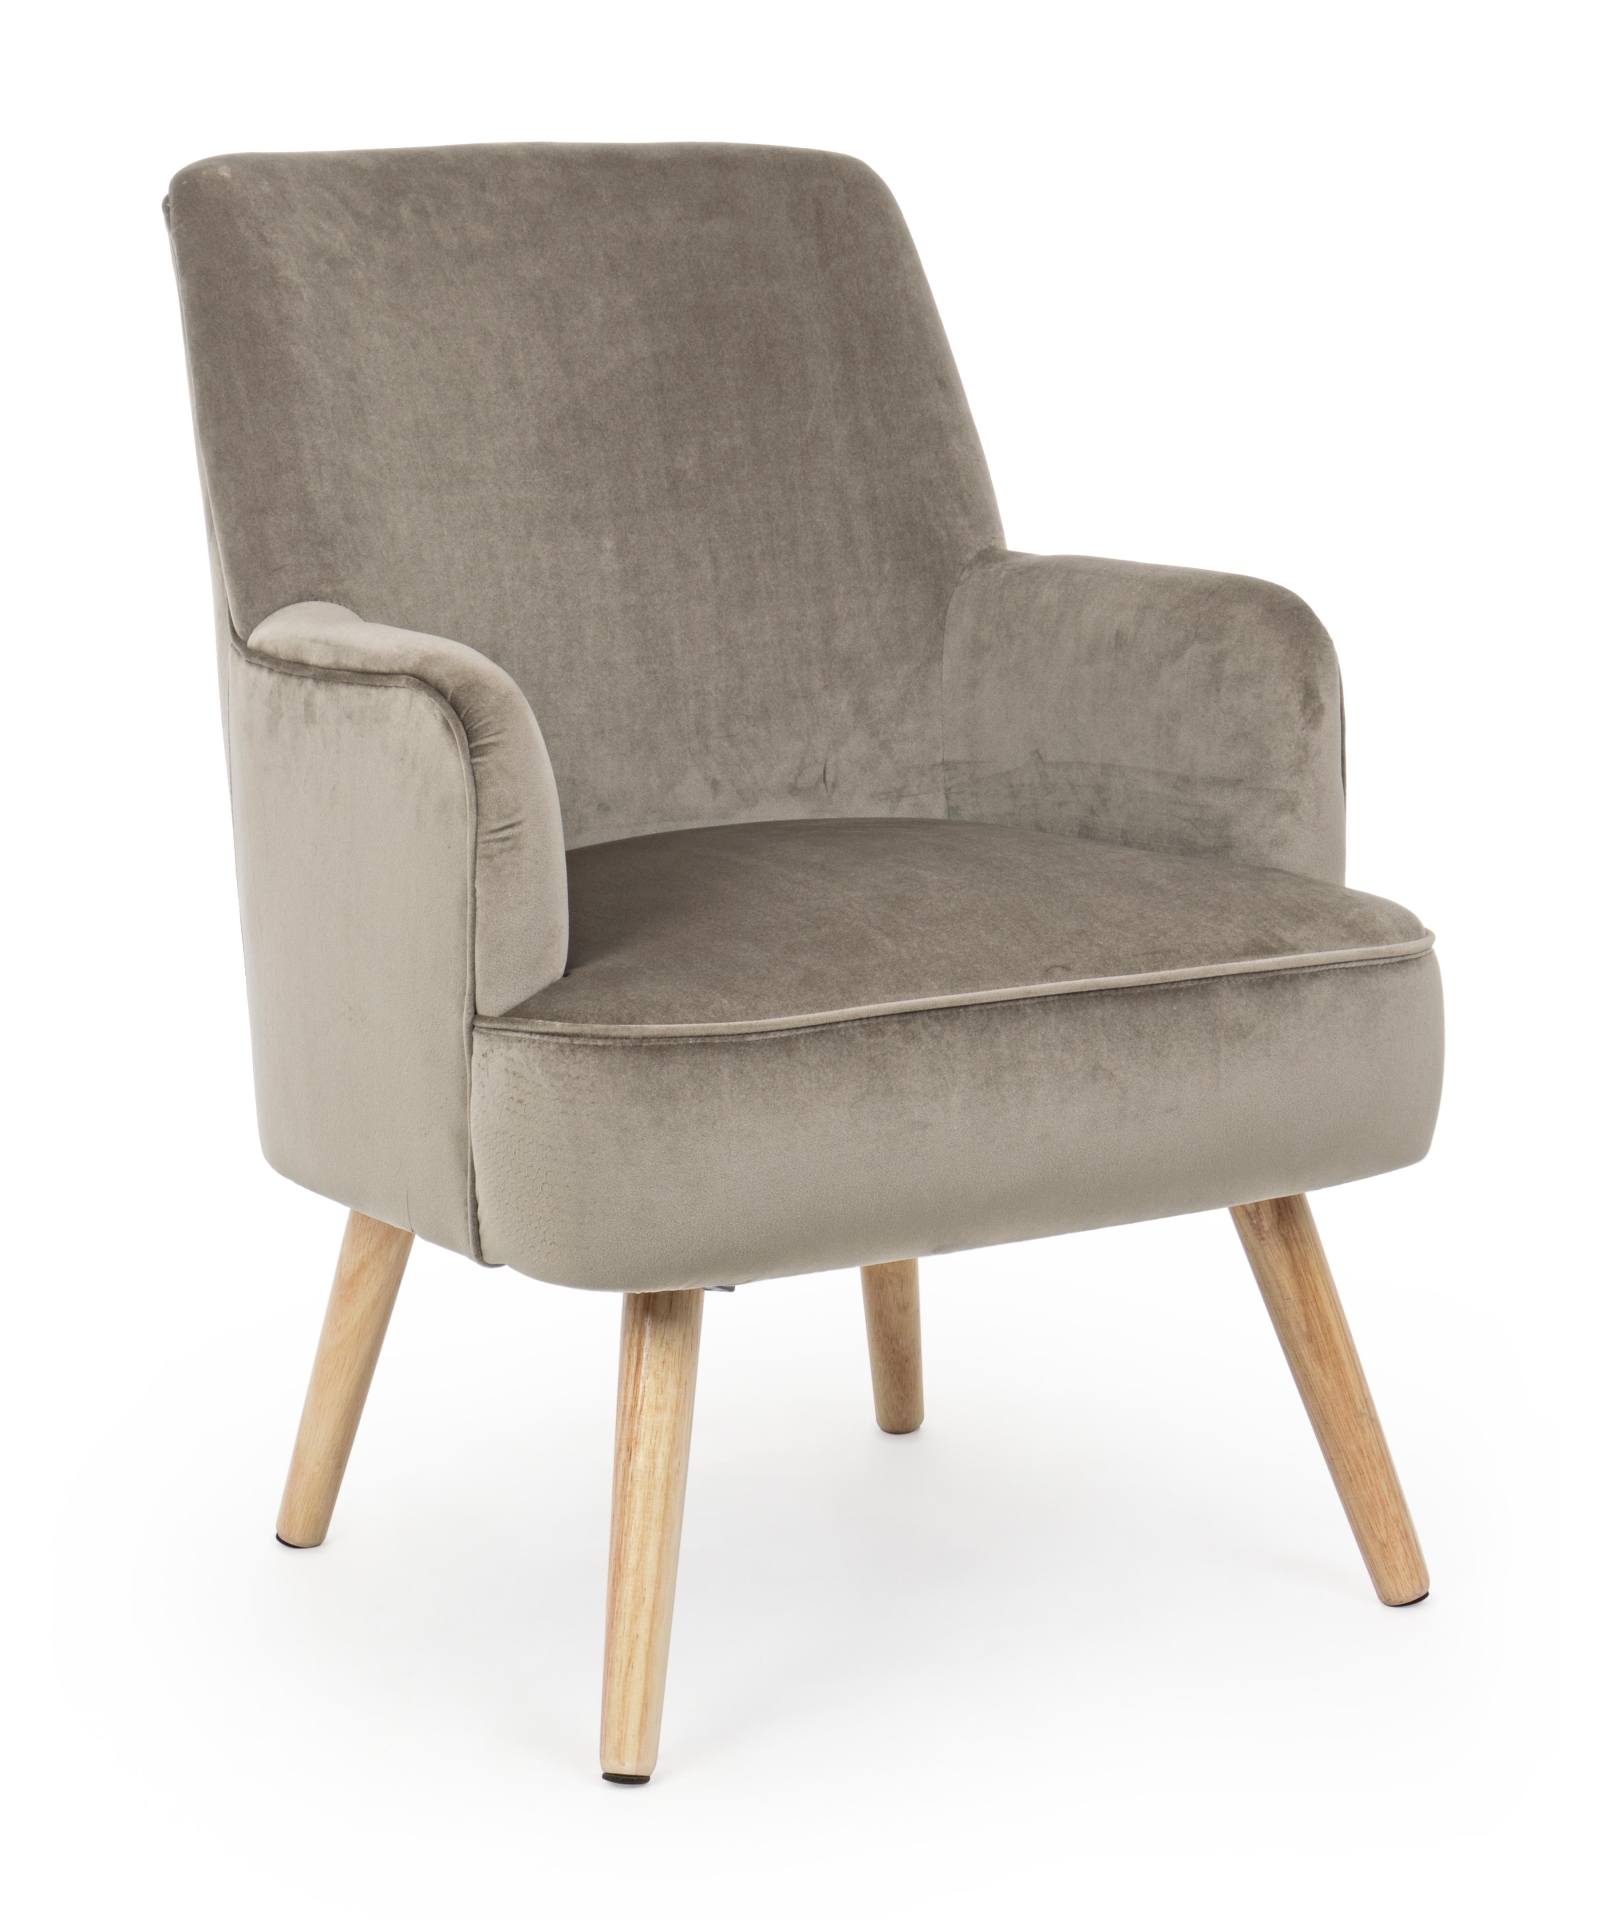 Der Sessel Adeline überzeugt mit seinem klassischen Design. Gefertigt wurde er aus Stoff in Samt-Optik, welcher einen Taupe Farbton besitzt. Das Gestell ist aus Buchenholz und hat eine natürliche Farbe. Der Sessel besitzt eine Sitzhöhe von 42 cm. Die Brei